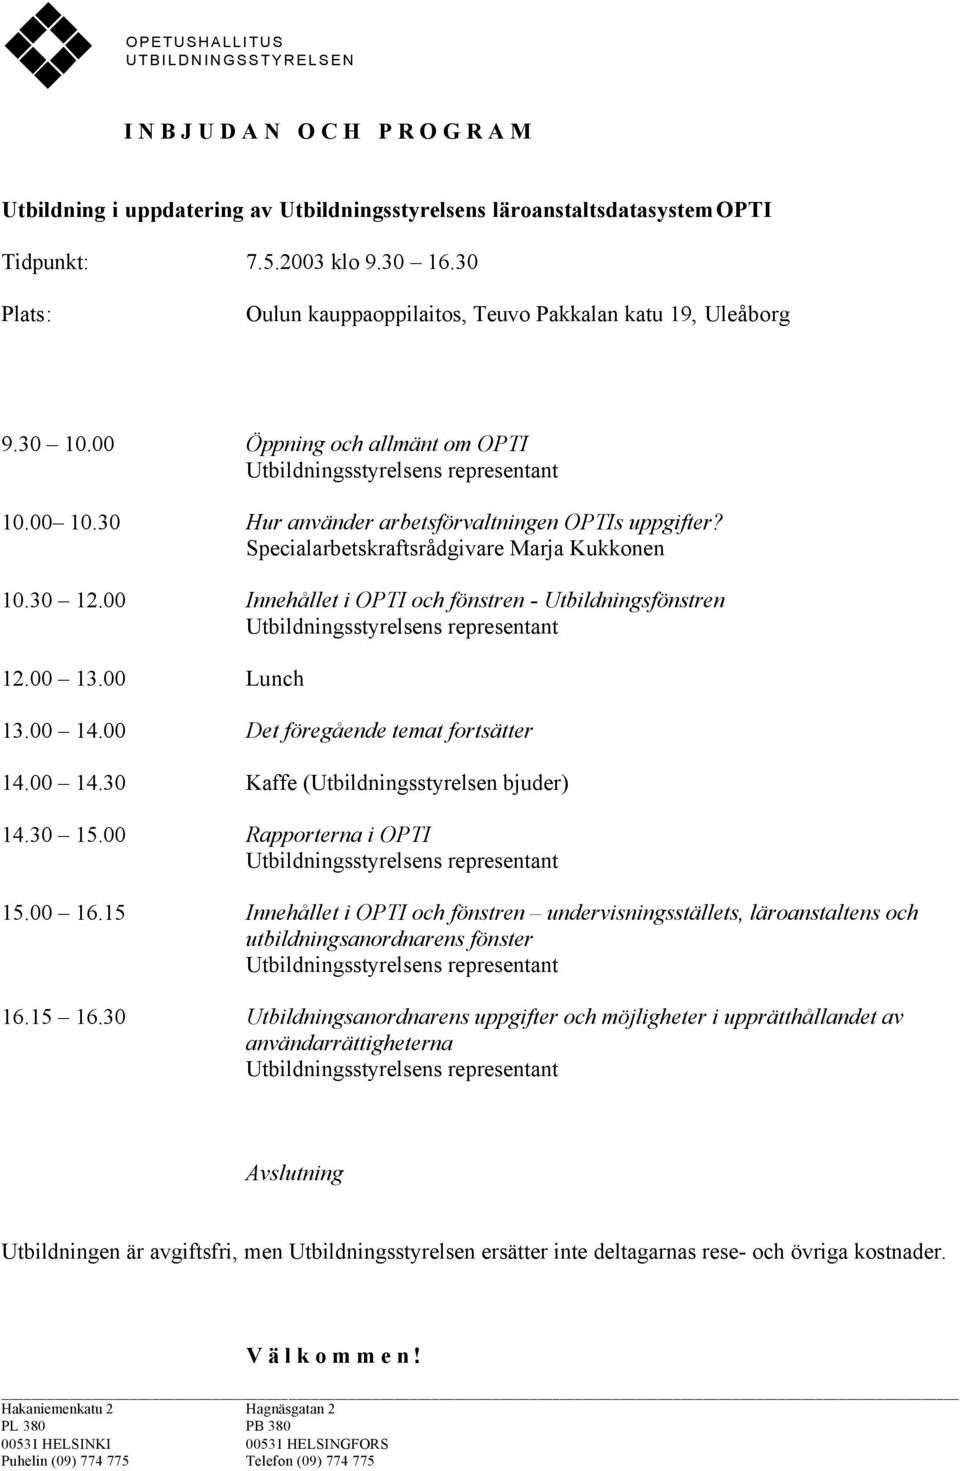 Specialarbetskraftsrådgivare Marja Kukkonen 10.30 12.00 Innehållet i OPTI och fönstren - Utbildningsfönstren 12.00 13.00 Lunch 13.00 14.00 Det föregående temat fortsätter 14.00 14.30 Kaffe (Utbildningsstyrelsen bjuder) 14.